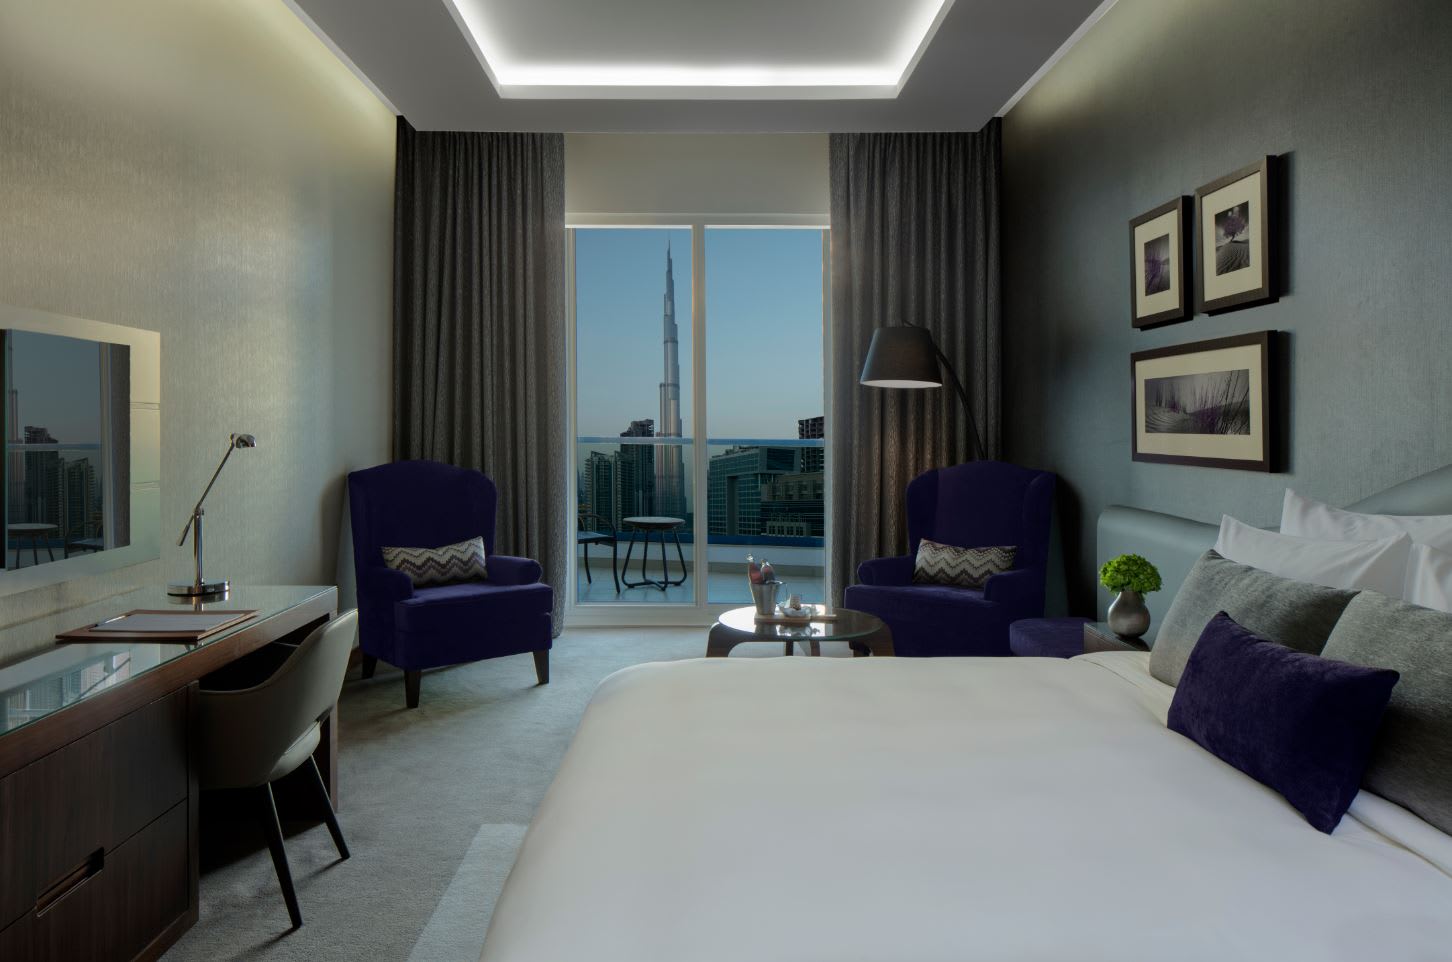 ليصبح الأكثر ودية في دبي.. فندق يحظر استخدام الألقاب الرسمية